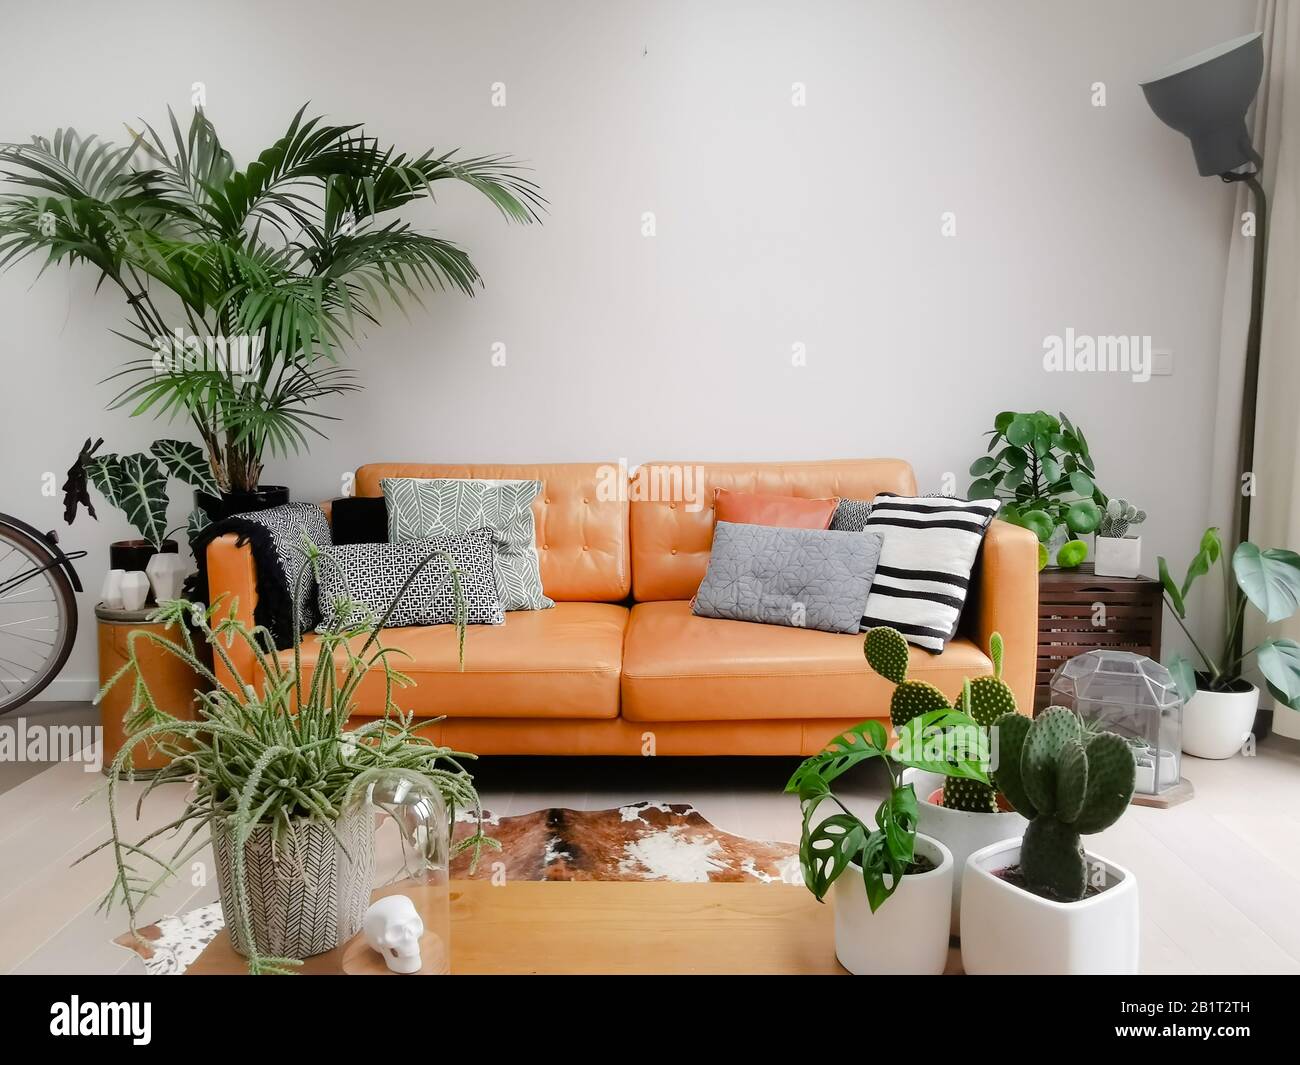 Helles, modernes Wohnzimmer mit brauner Ledercouch, Rindslederdecke und zahlreichen grünen Zimmerpflanzen, die einen urbanen Dschungel erschaffen Stockfoto